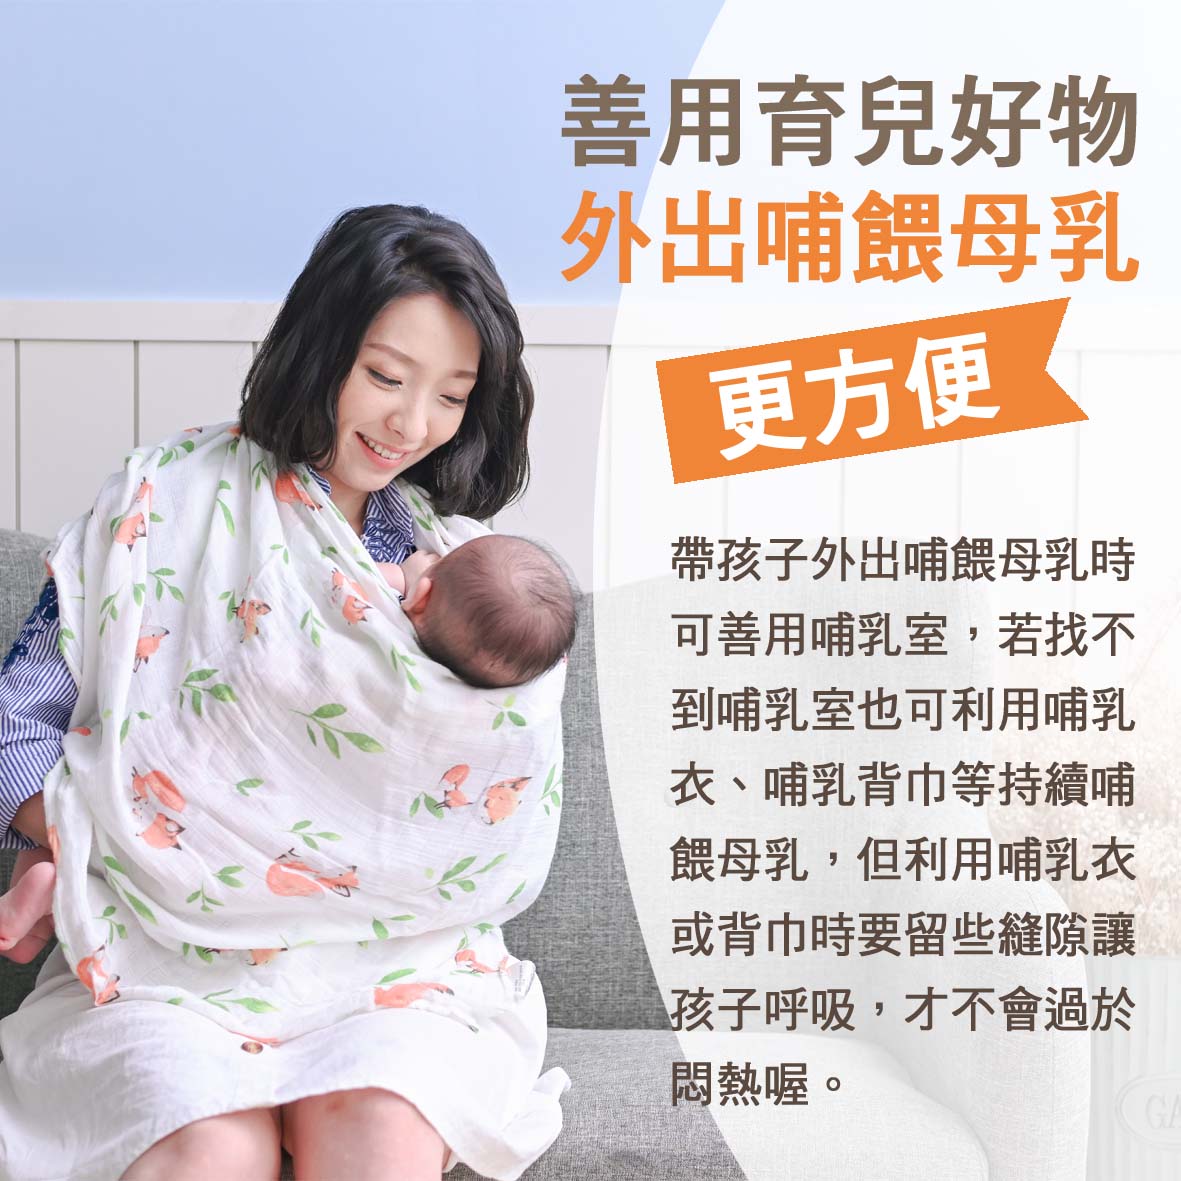 寶寶篇第13週-善用育兒好物 外出哺餵母乳更方便